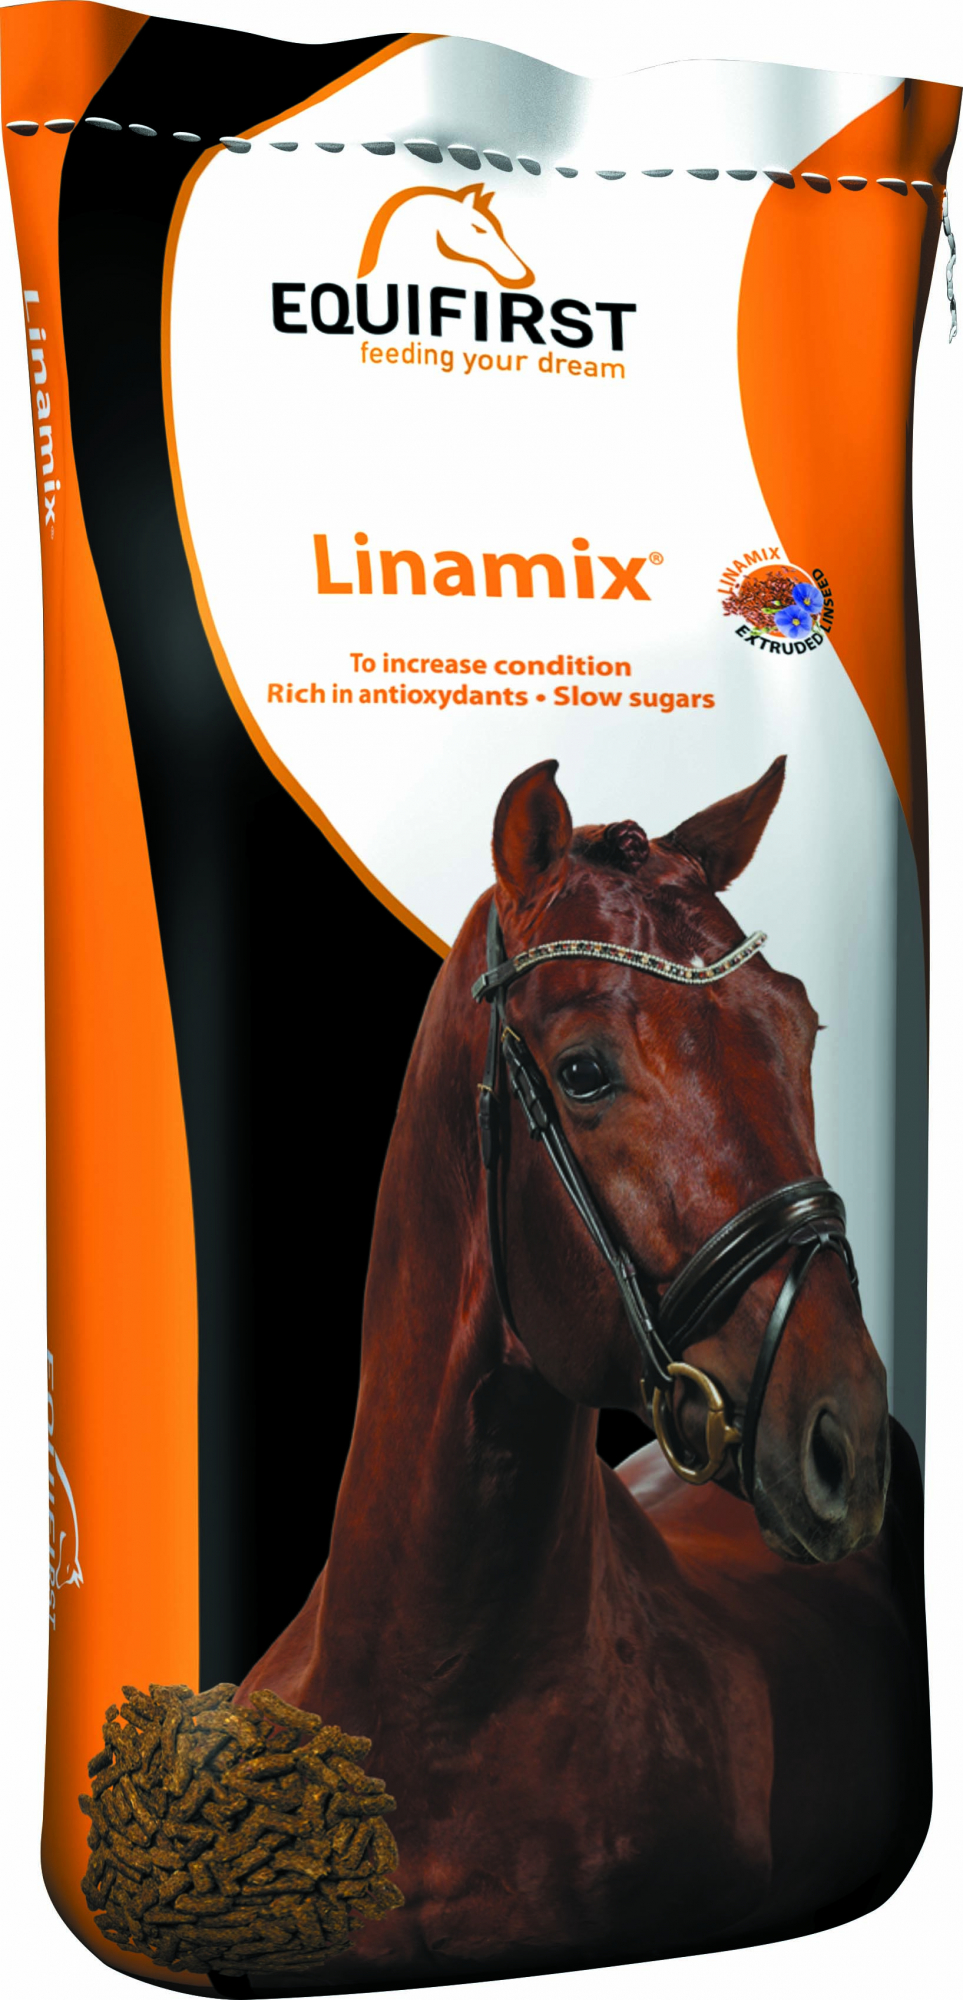 Equifirst Linamix complemanto alimentar para melhorar a condição do cavalo